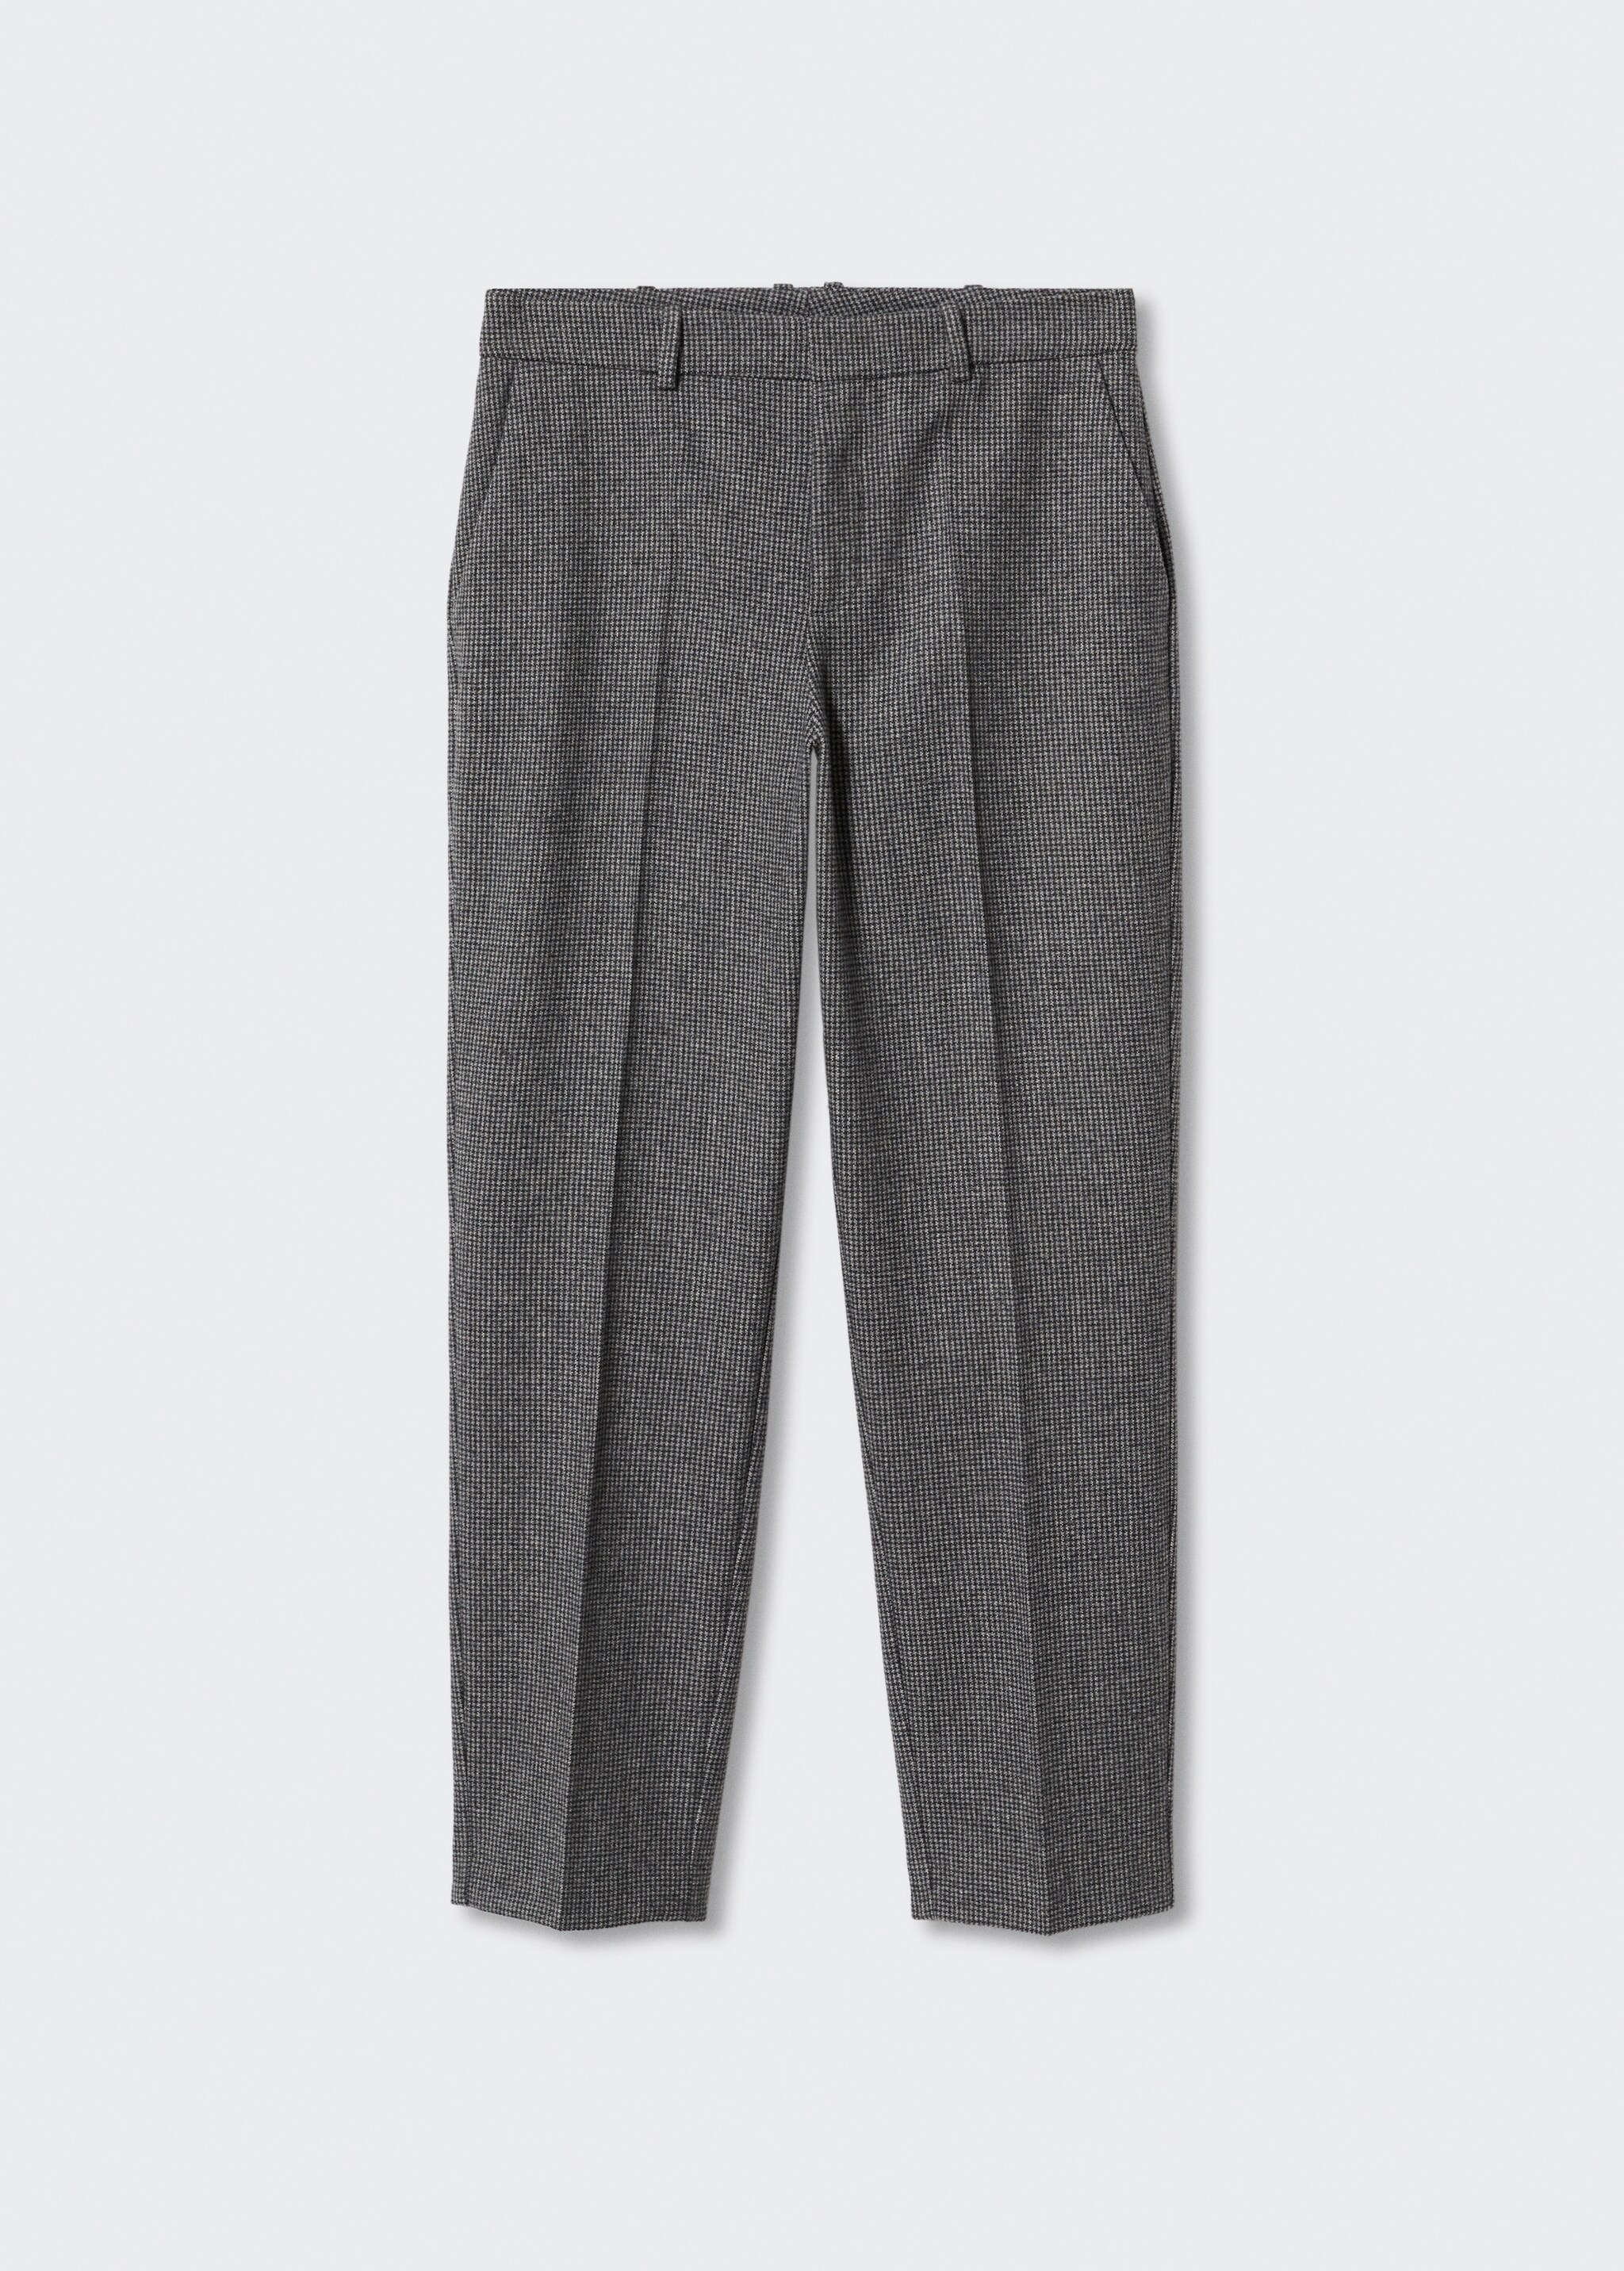 Pantalón traje slim fit lana - Artículo sin modelo